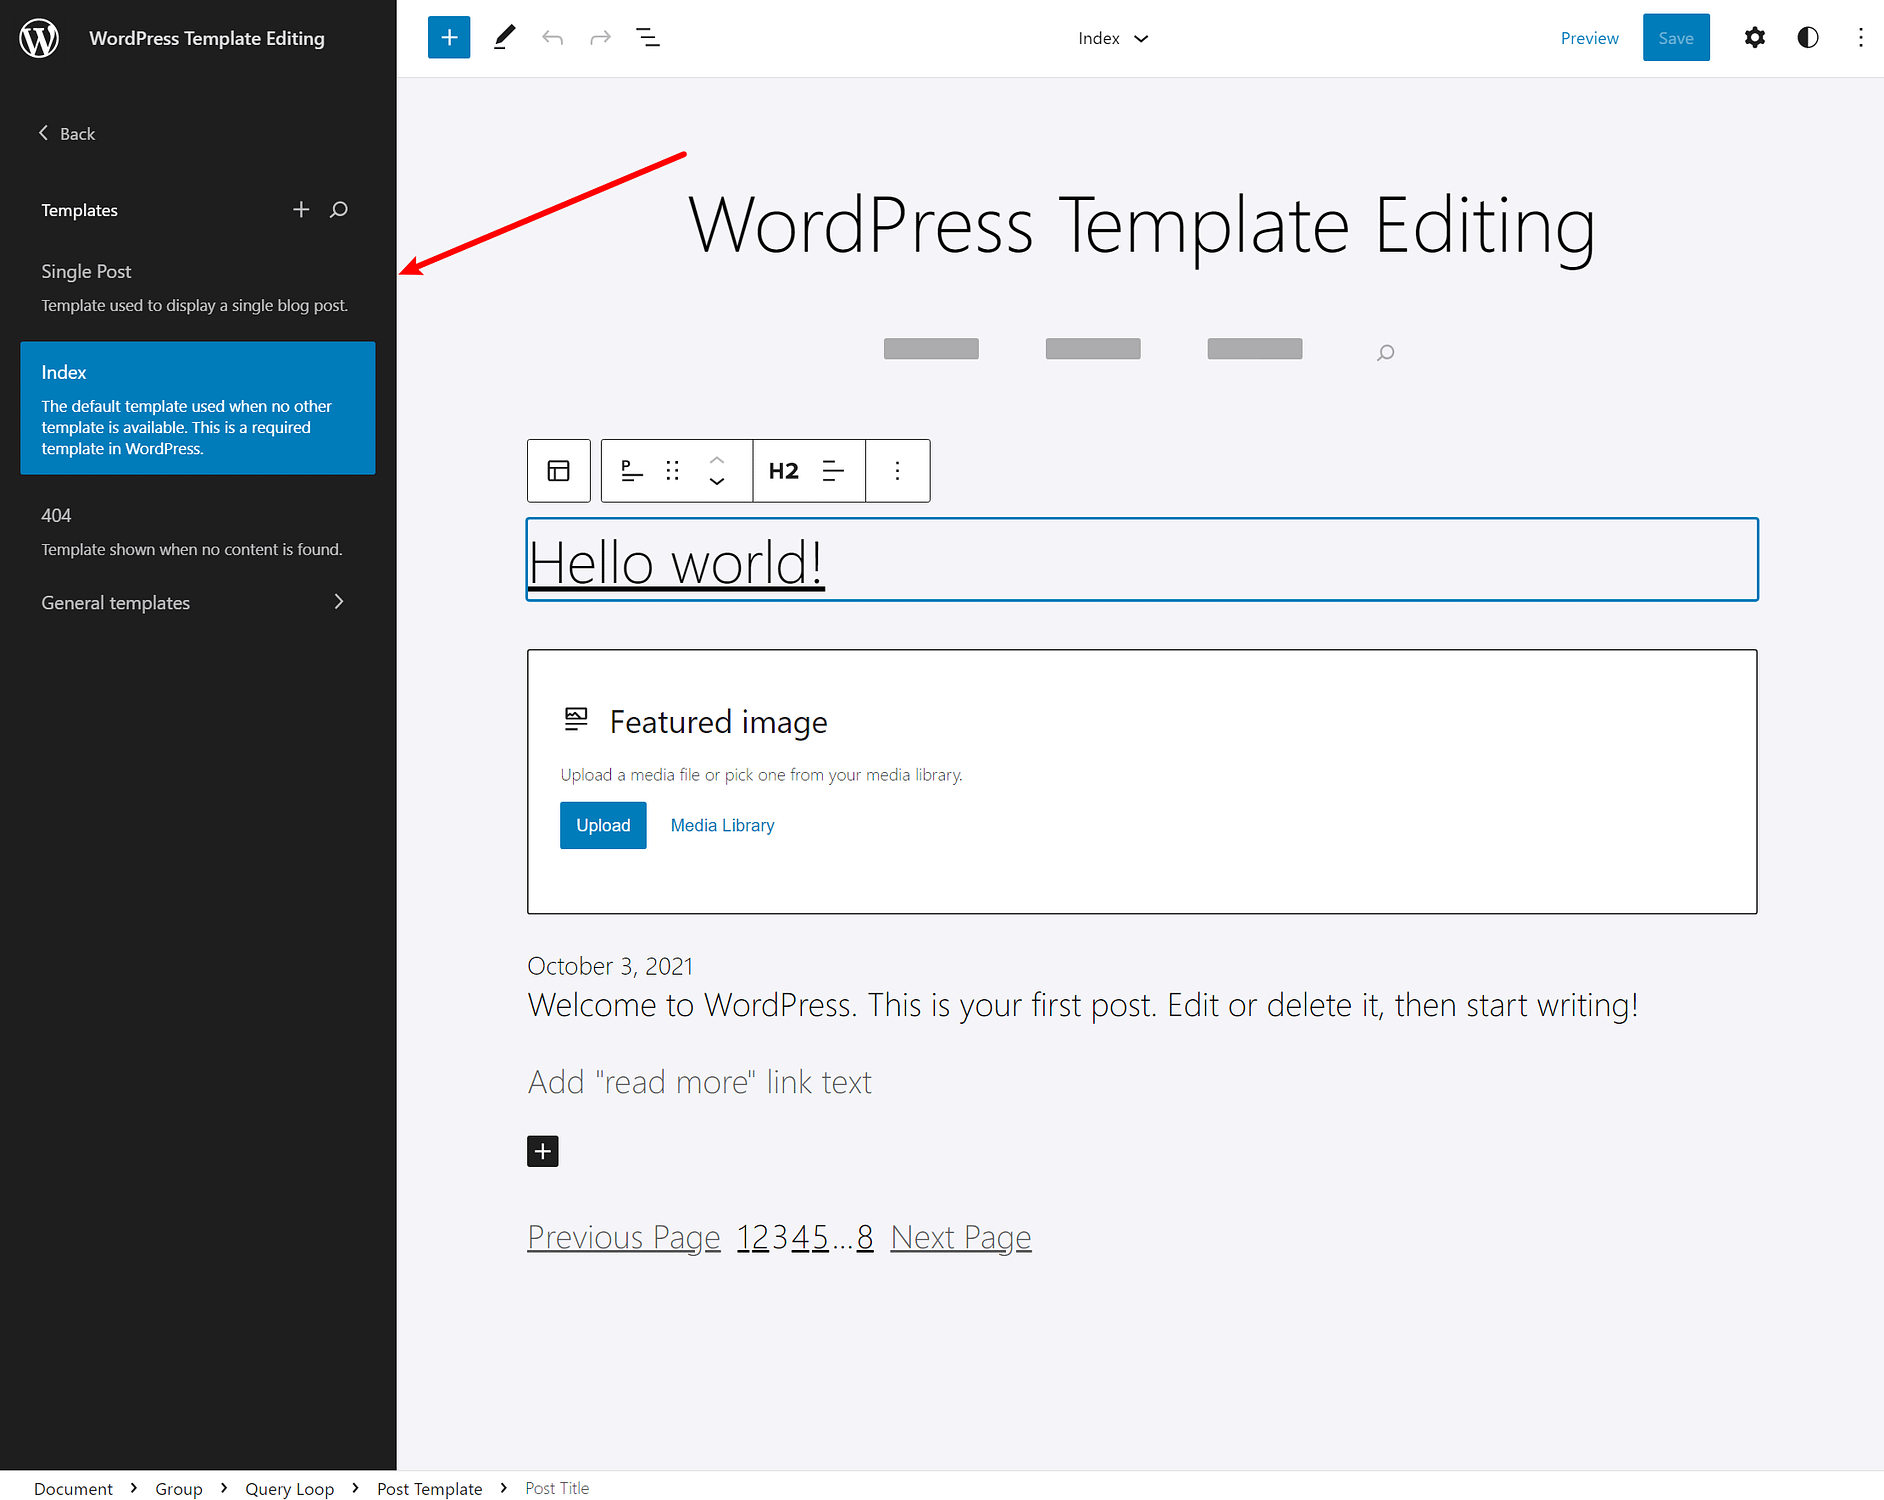 Chuyển đổi giữa các mẫu trong Trình chỉnh sửa trang web WordPress